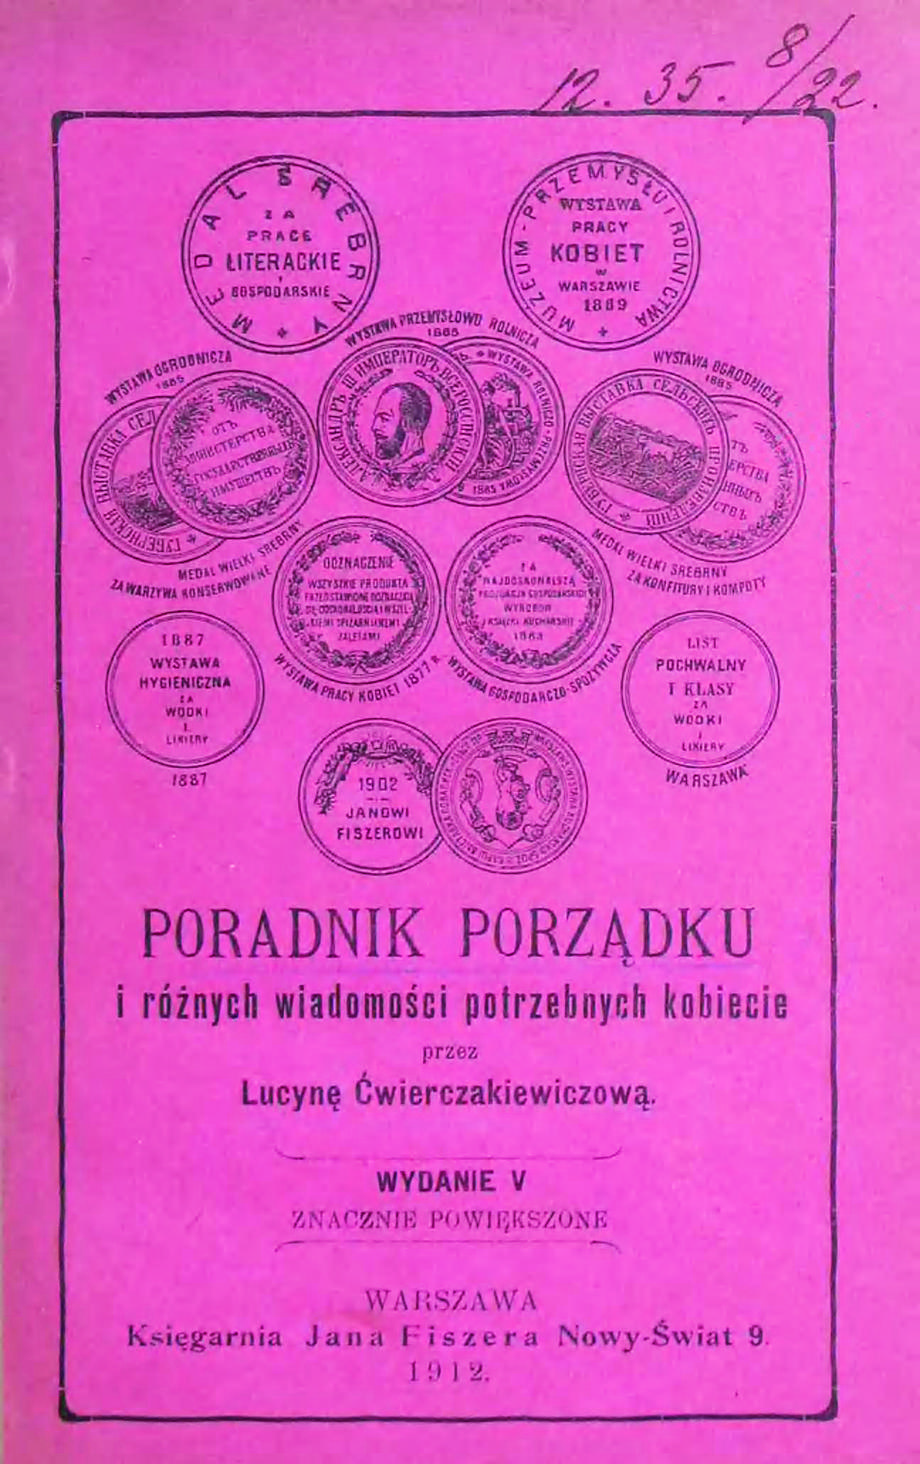 Gospodarskie poradniki Lucyny Ćwierczakiewiczowej sprzedawały się w wielotysięcznych nakładach, a jej książek z przepisami była na rynku cała masa. Jedną ze specjalności autorki były słodkości